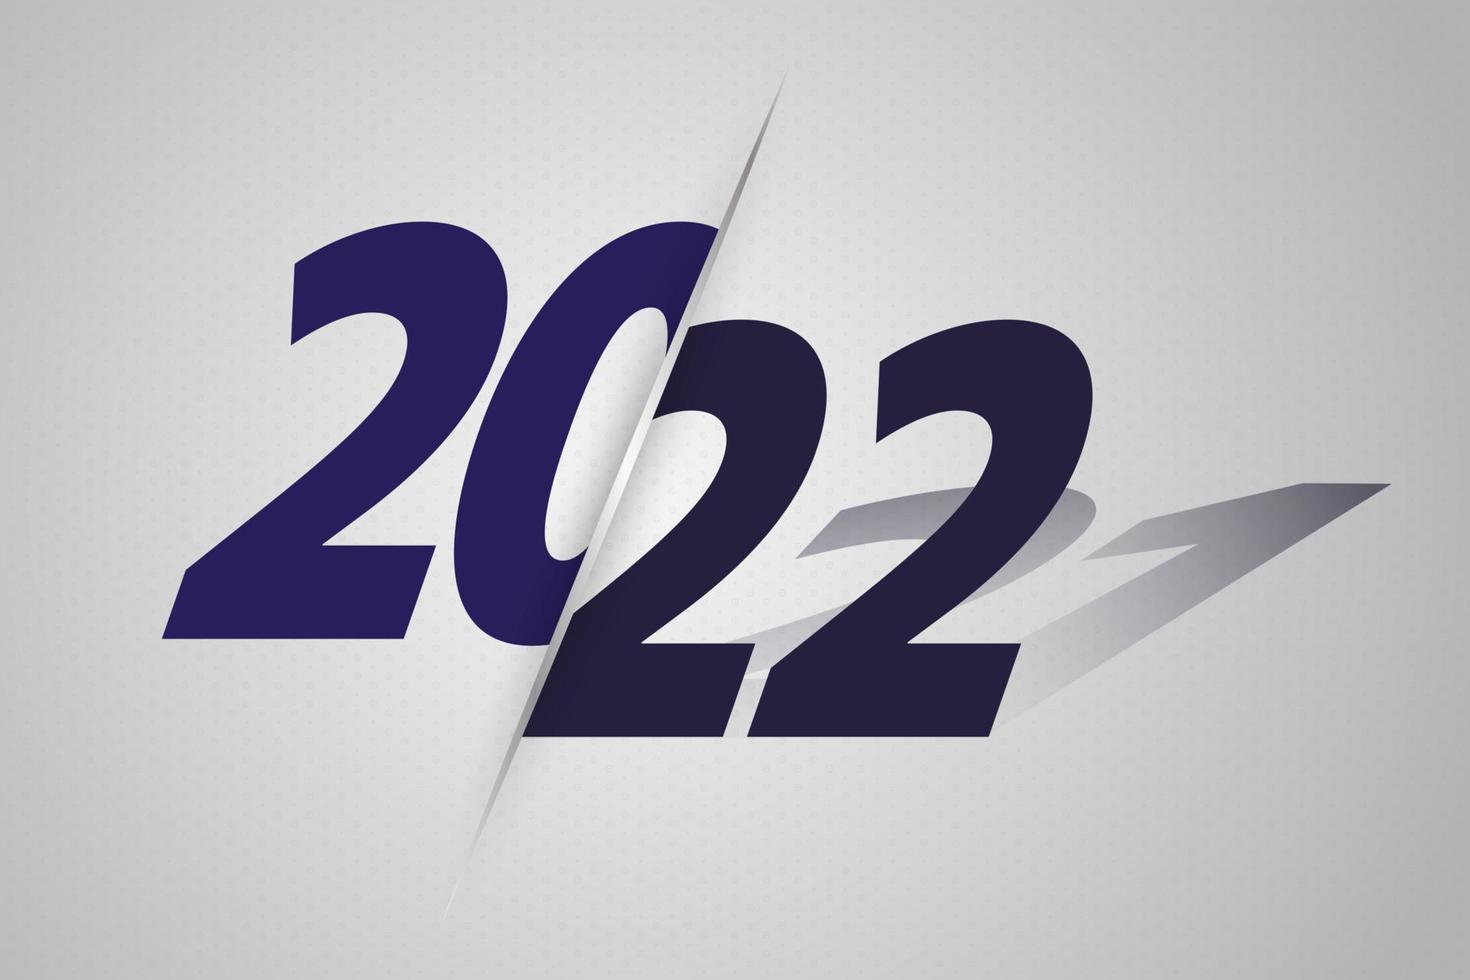 anno 2022 con ombre dell'anno 2020. vettore